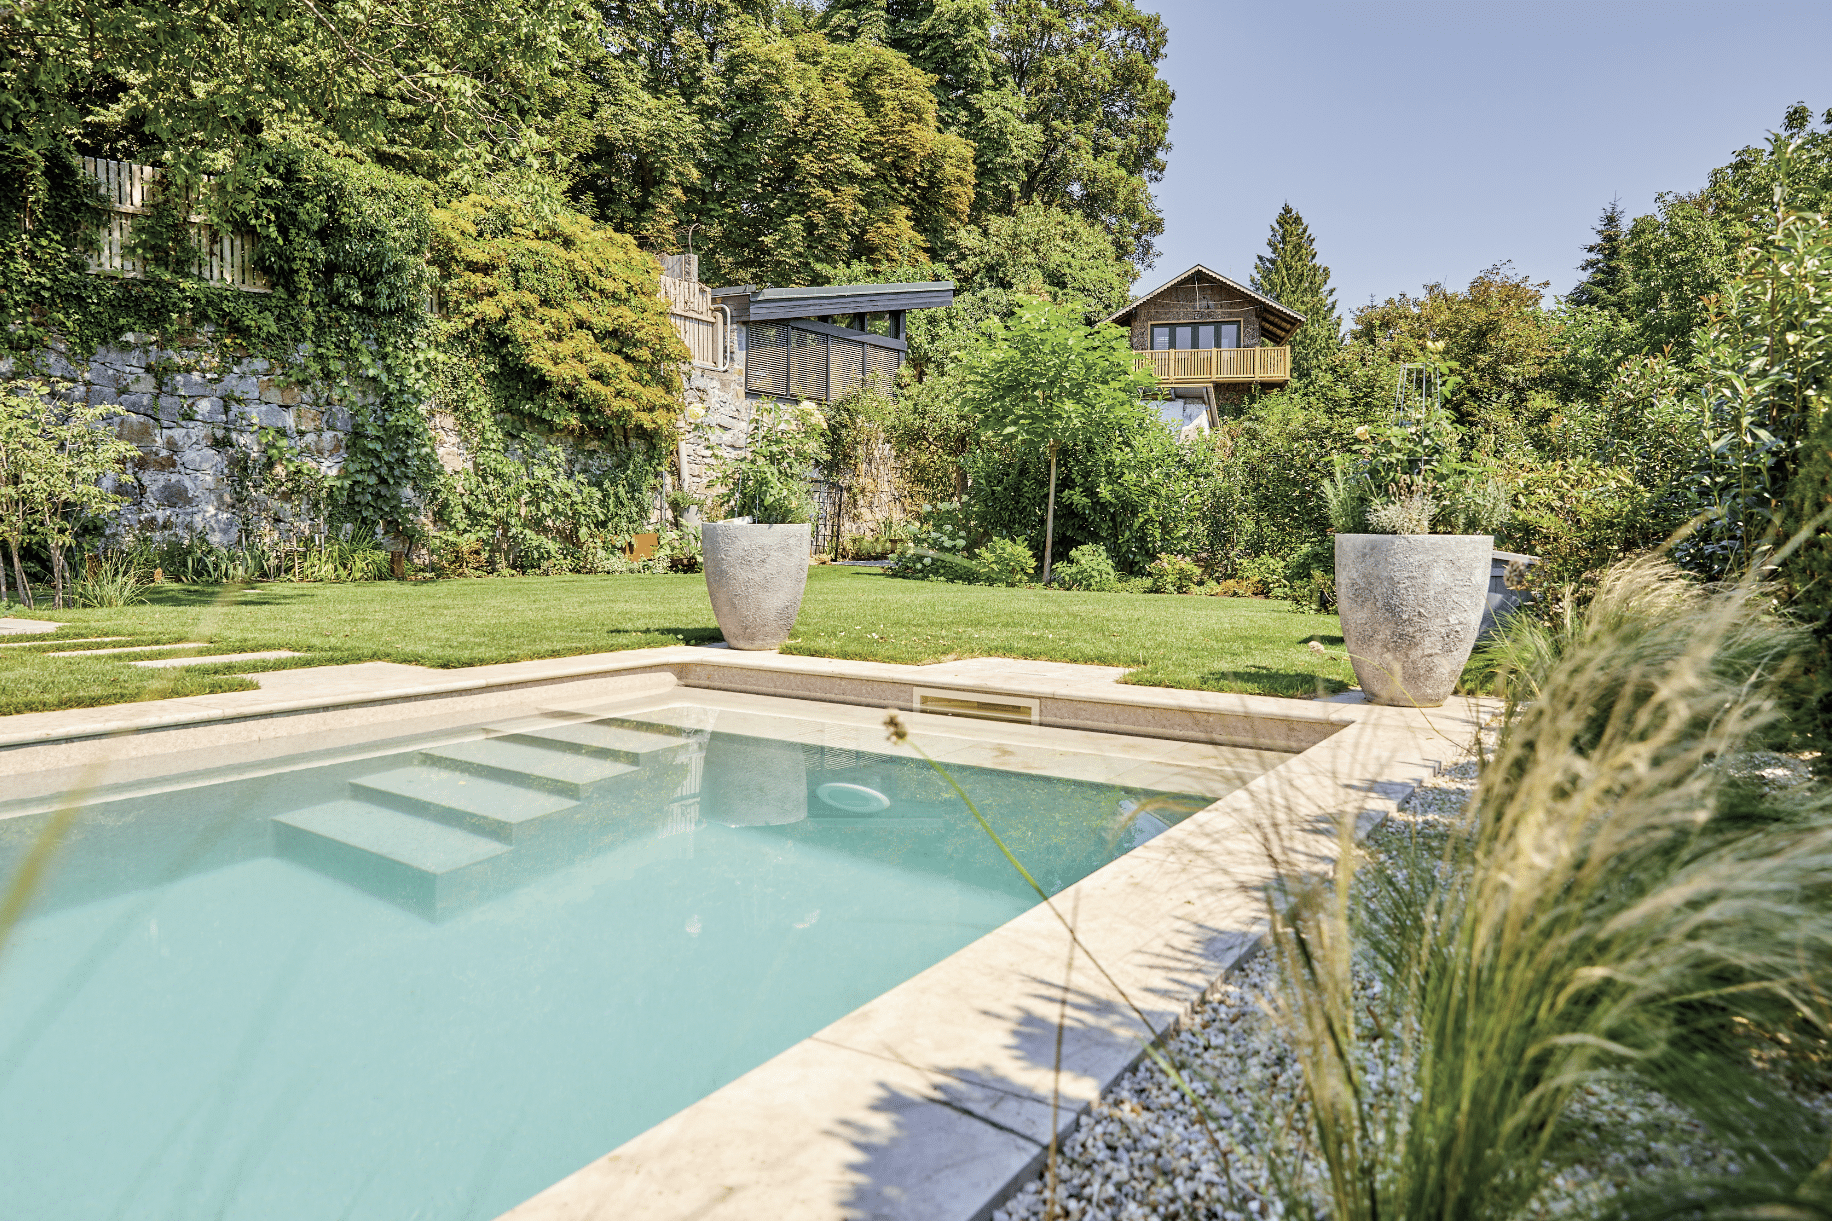 Friedrich Reitinger Schwimmbad und Wellness zeigt einen sehr natürlich gehaltenen Garten mit vielen Pflanzen und einem in den Boden eingelassenen, rechteckigen Pool mit Stufen und gefliester Umrandung.